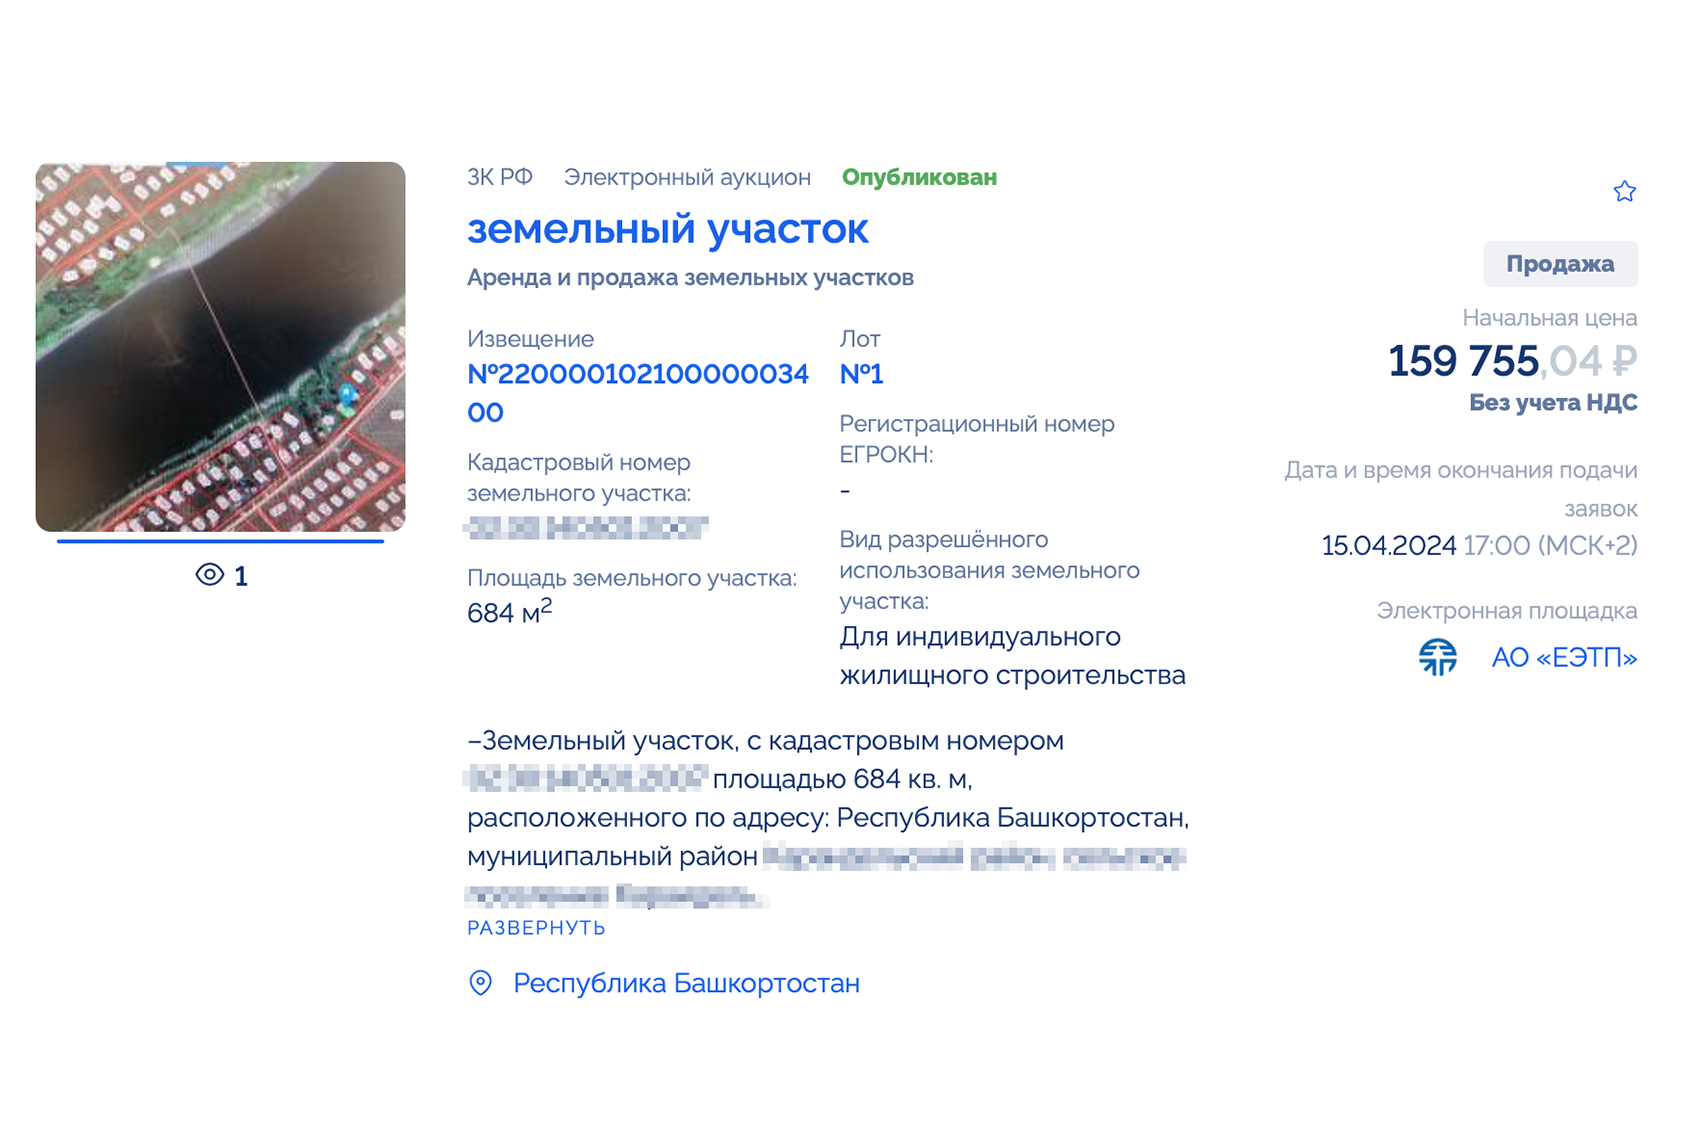 А здесь уже назначили аукцион и есть начальная цена. Источник: torgi.gov.ru